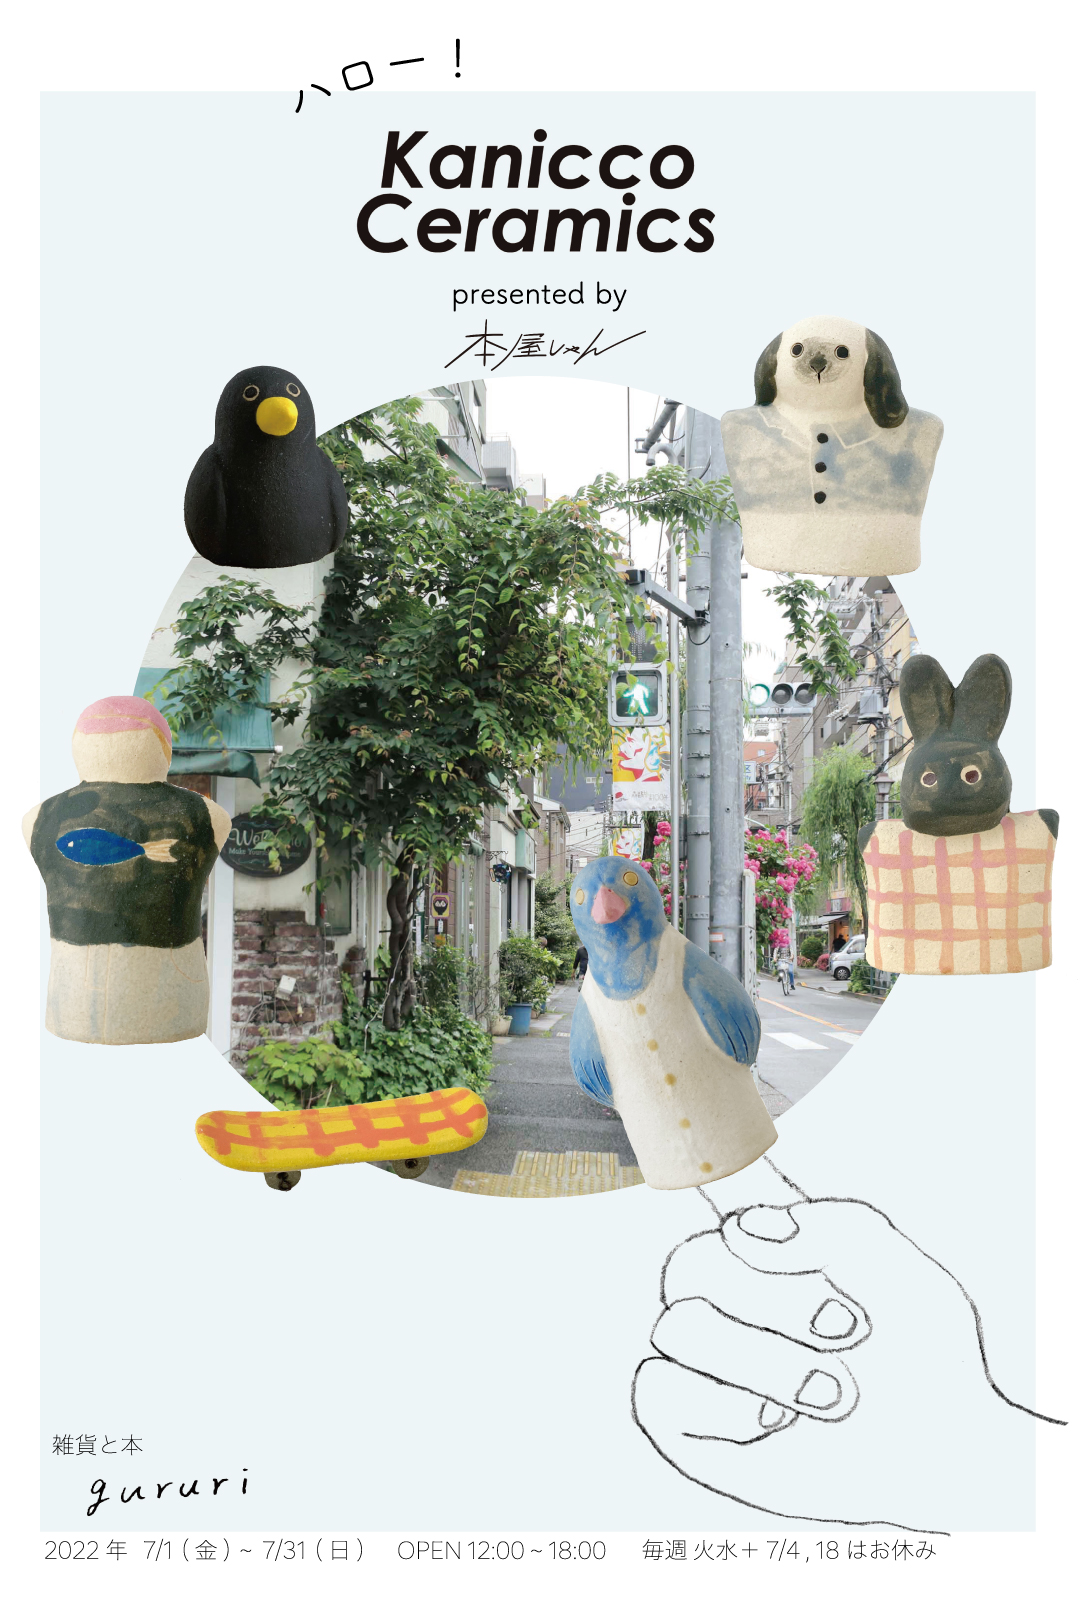 2022 7/1~7/31 東京谷中にて指人形の展示販売をします。